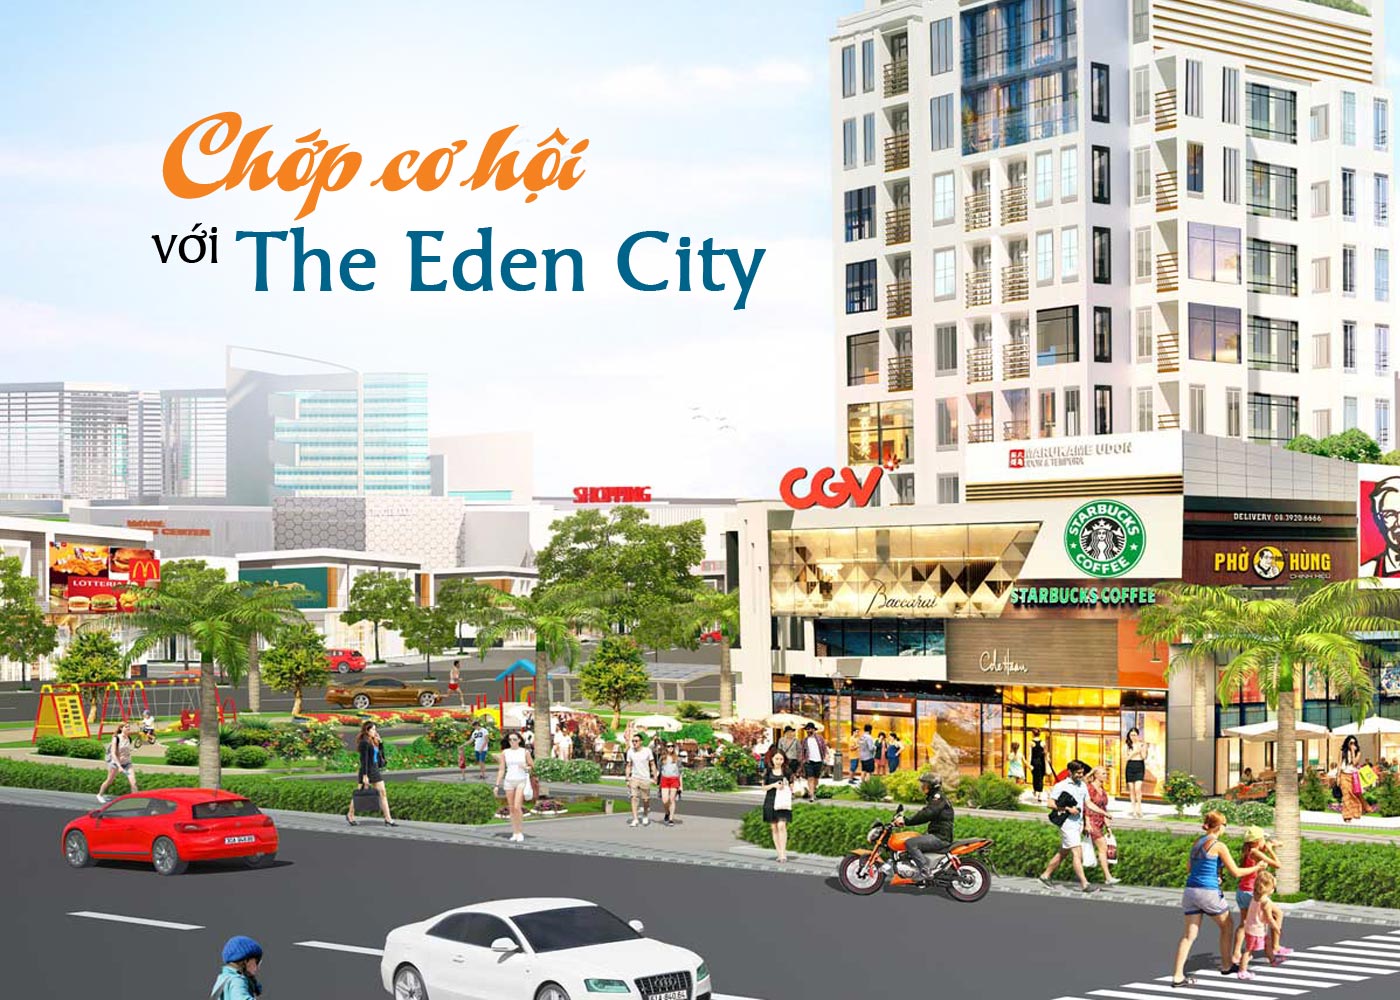 Chớp cơ hội với The Eden City - Ảnh 1